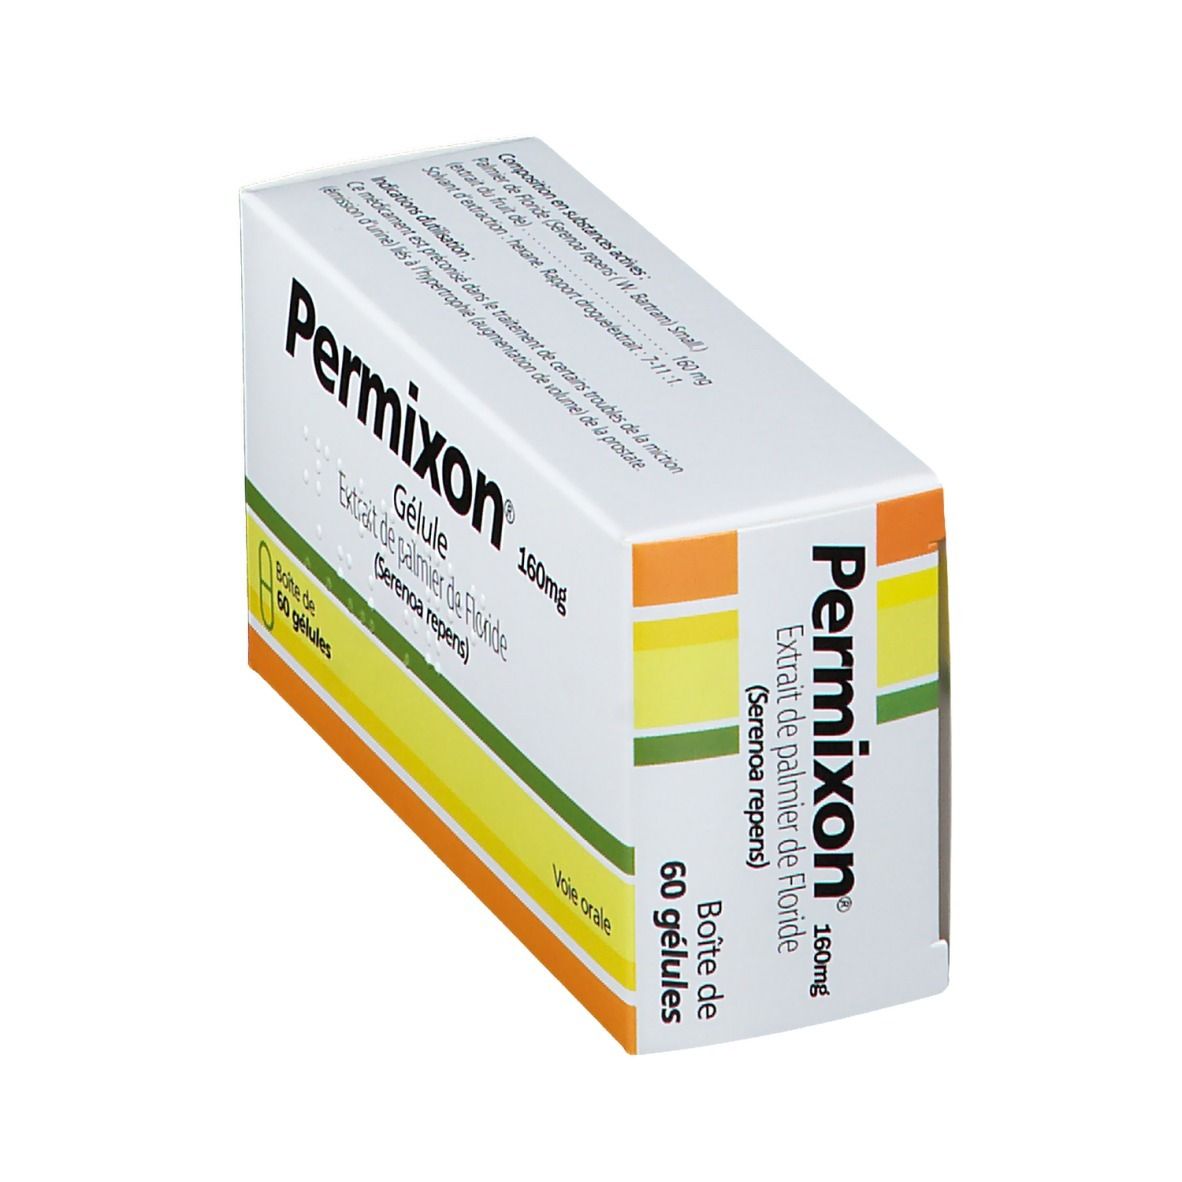 Permixon® 160 mg